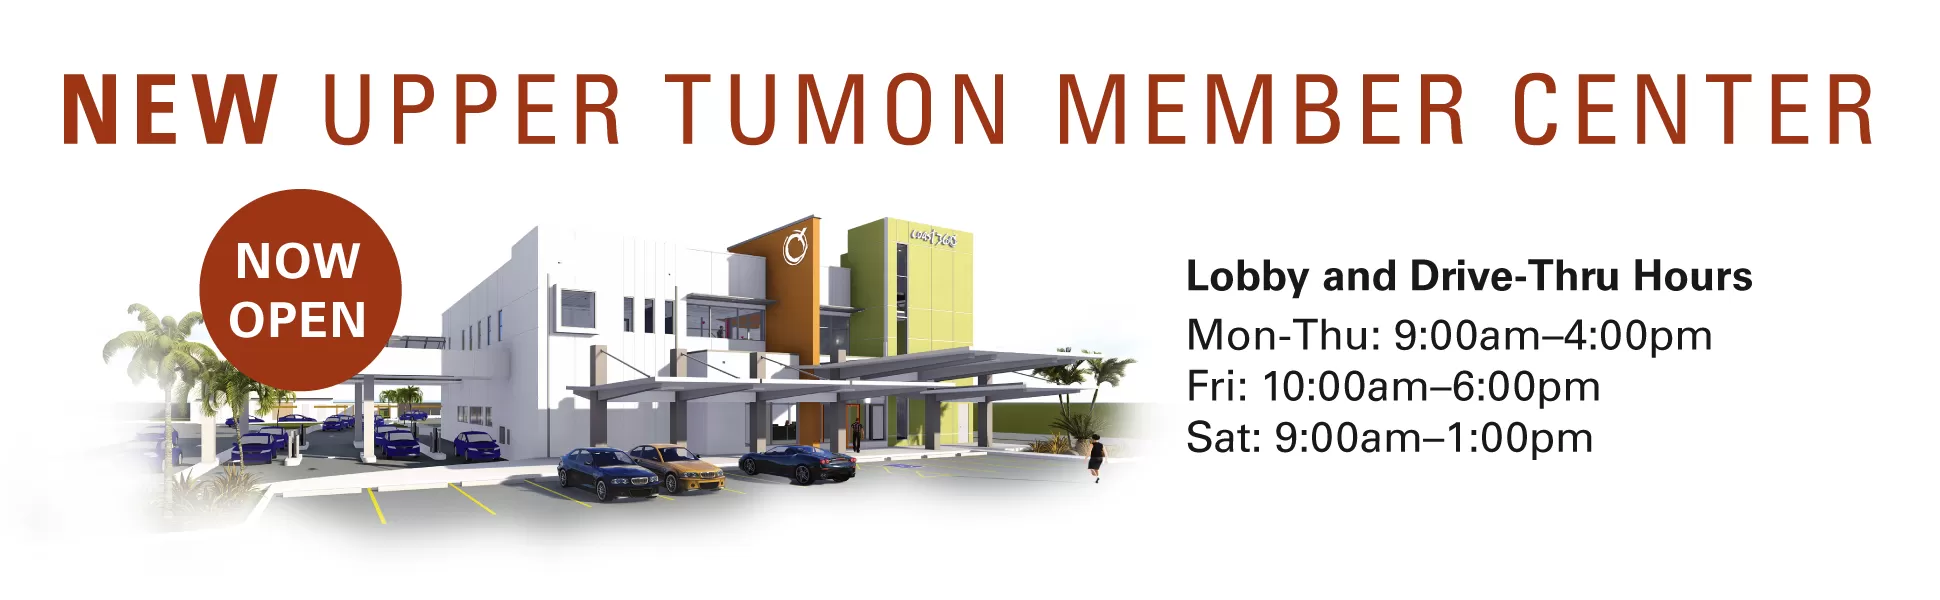 Upper Tumon Member Center Soft Opening Monday, Jan 22 